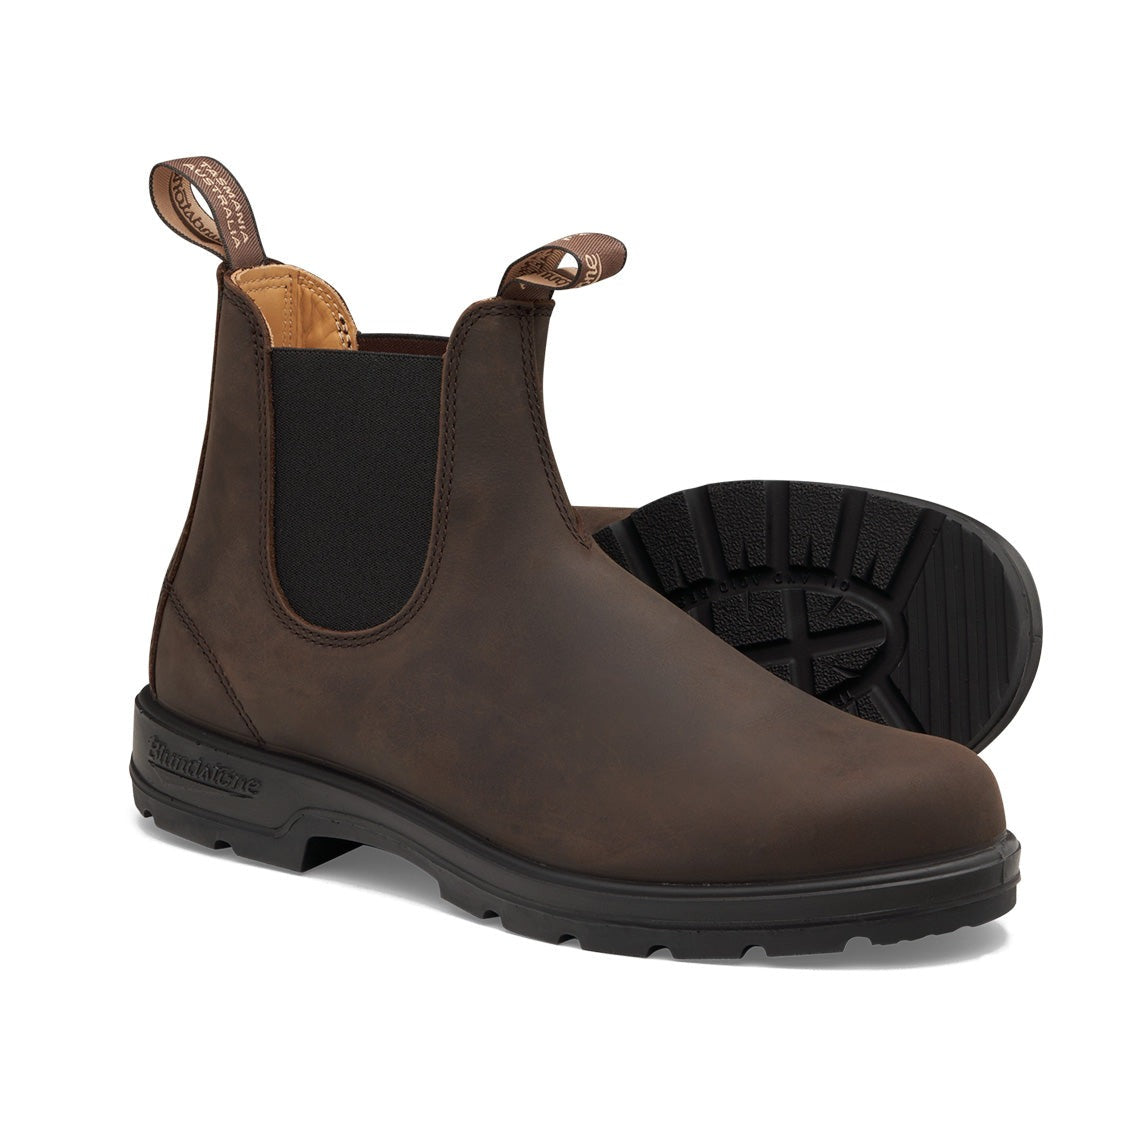 Blundstone #2340 Classic boot brown profile sole